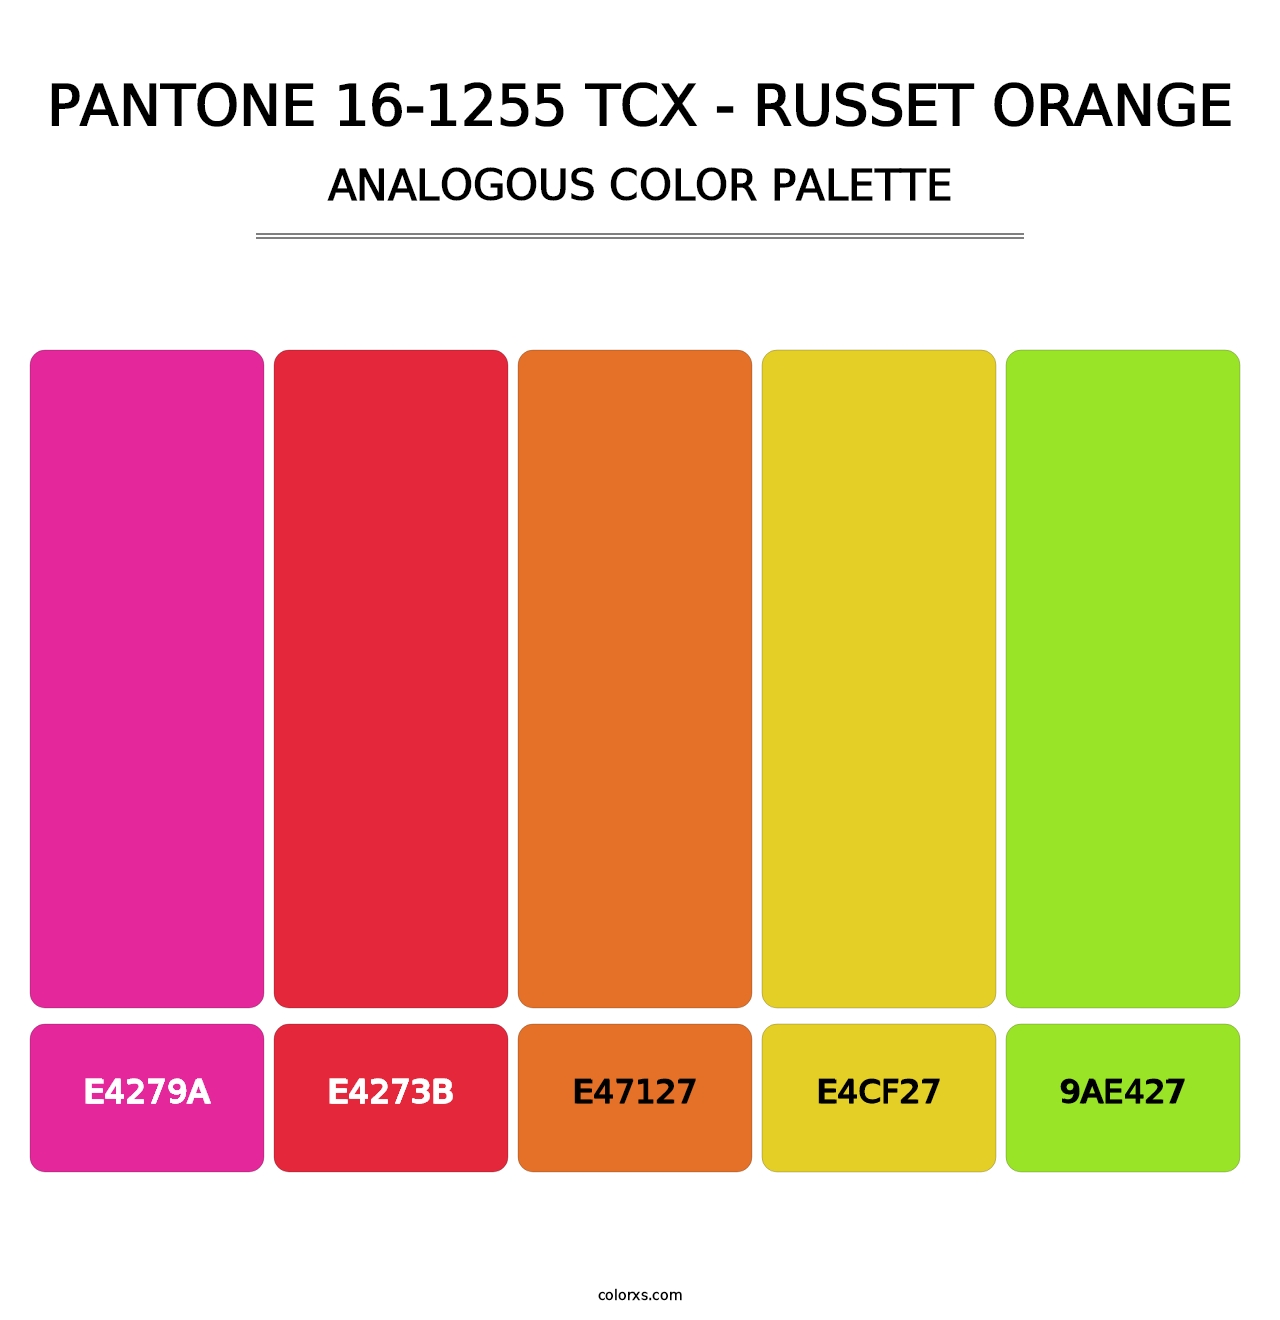 PANTONE 16-1255 TCX - Russet Orange - Analogous Color Palette